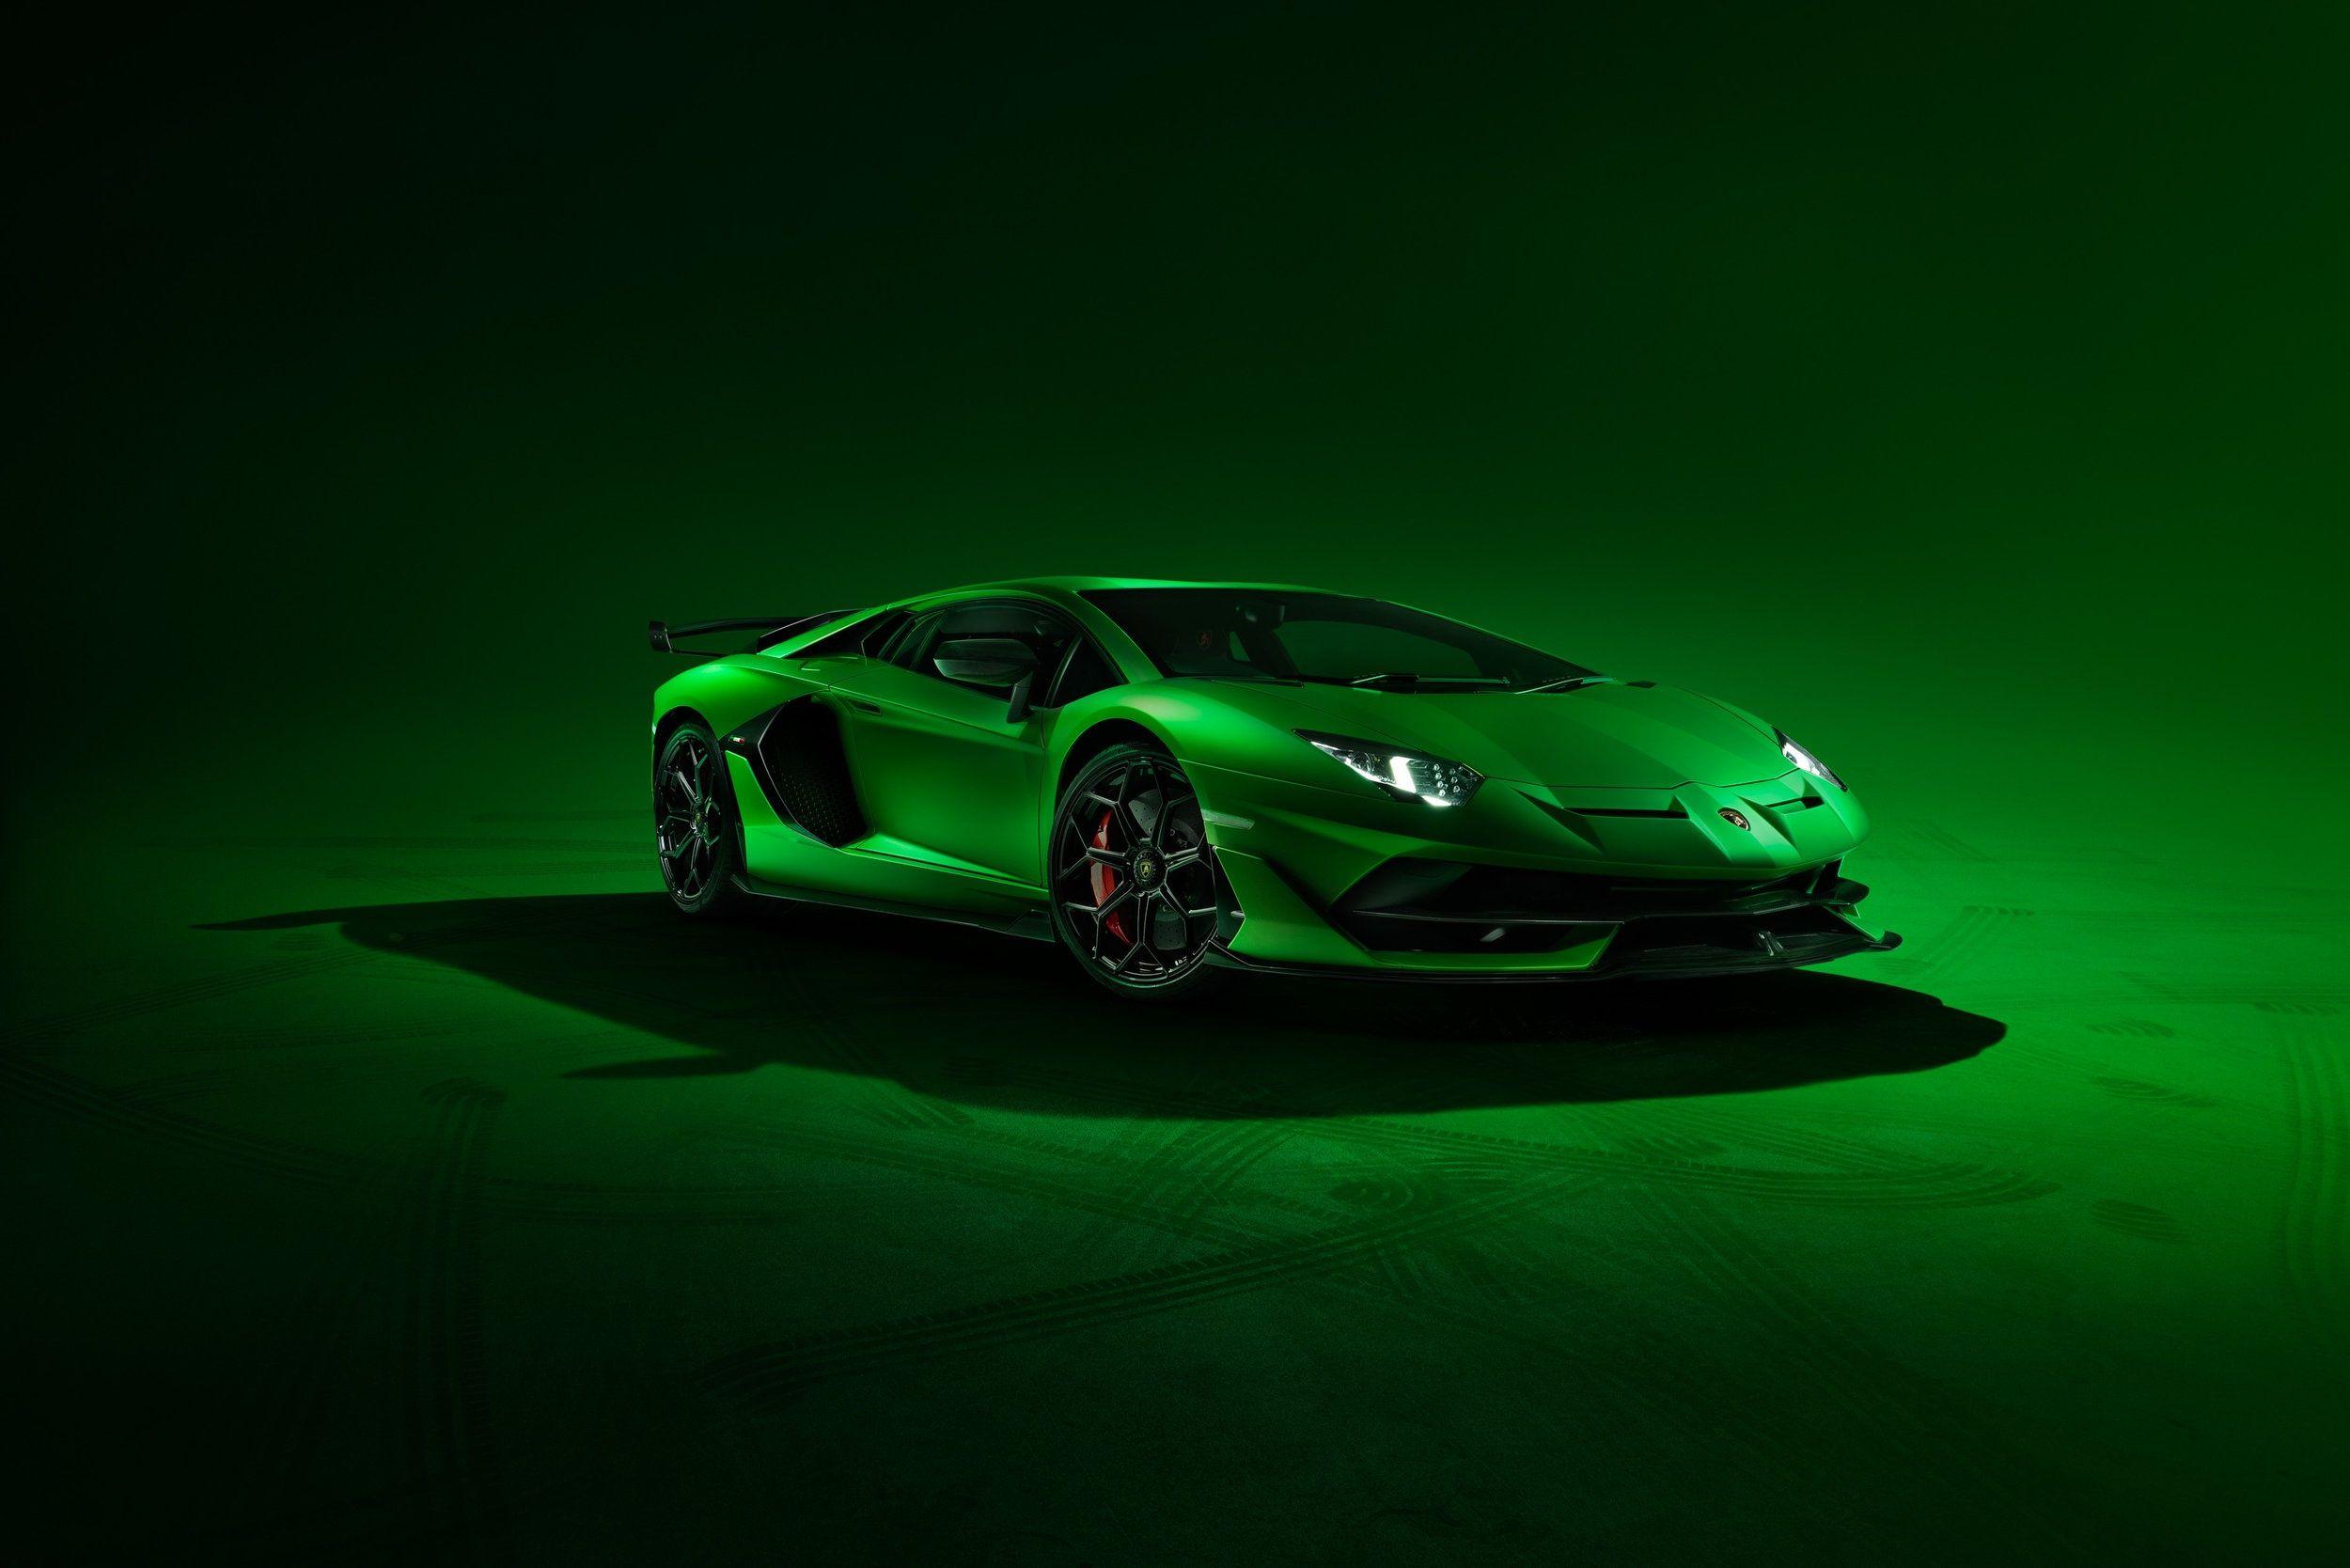 Green Super Car HD Wallpapers: Siêu xe xanh lá cây HD là lựa chọn hoàn hảo cho những người đam mê độc đáo và sáng tạo. Những hình ảnh của chiếc xe này ta sẽ cảm thấy sự tuyệt vời trong thể thao và nghệ thuật, mang lại cảm giác của sự mạnh mẽ và tinh tế. Hãy để mình mê mẩn trong bộ sưu tập hình nền của chiếc siêu xe xanh này.